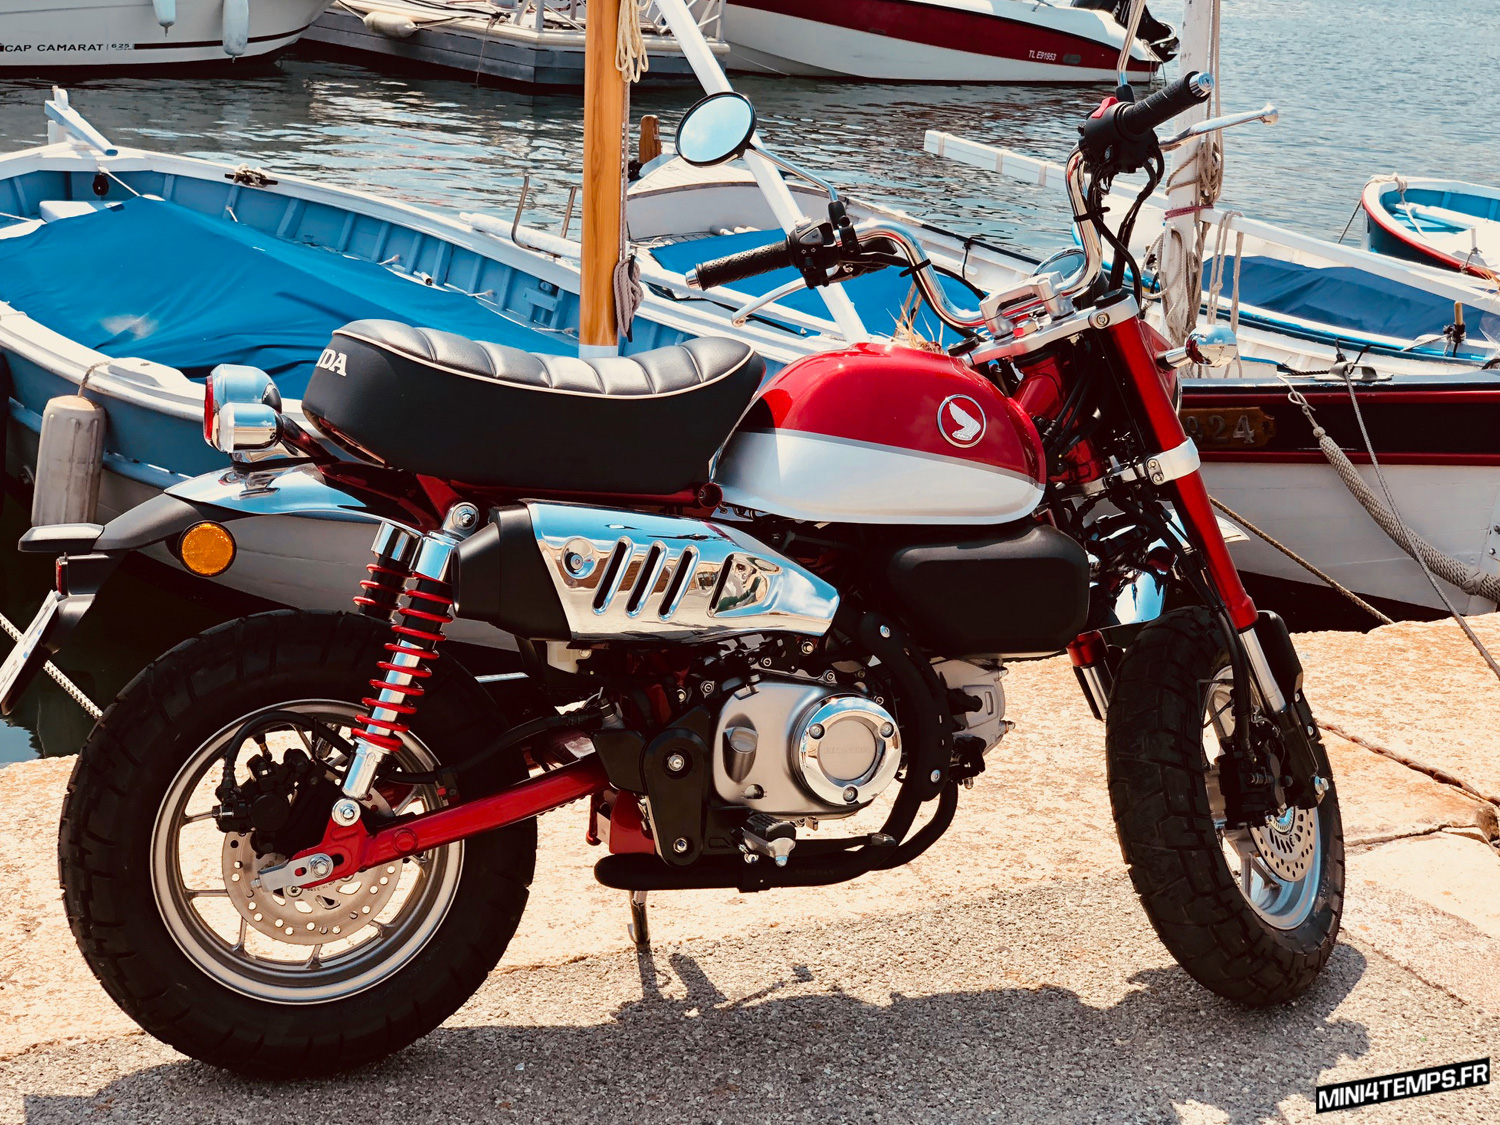 Le Honda Monkey 125 2018 rouge de Karl à Saint-Tropez - mini4temps.fr